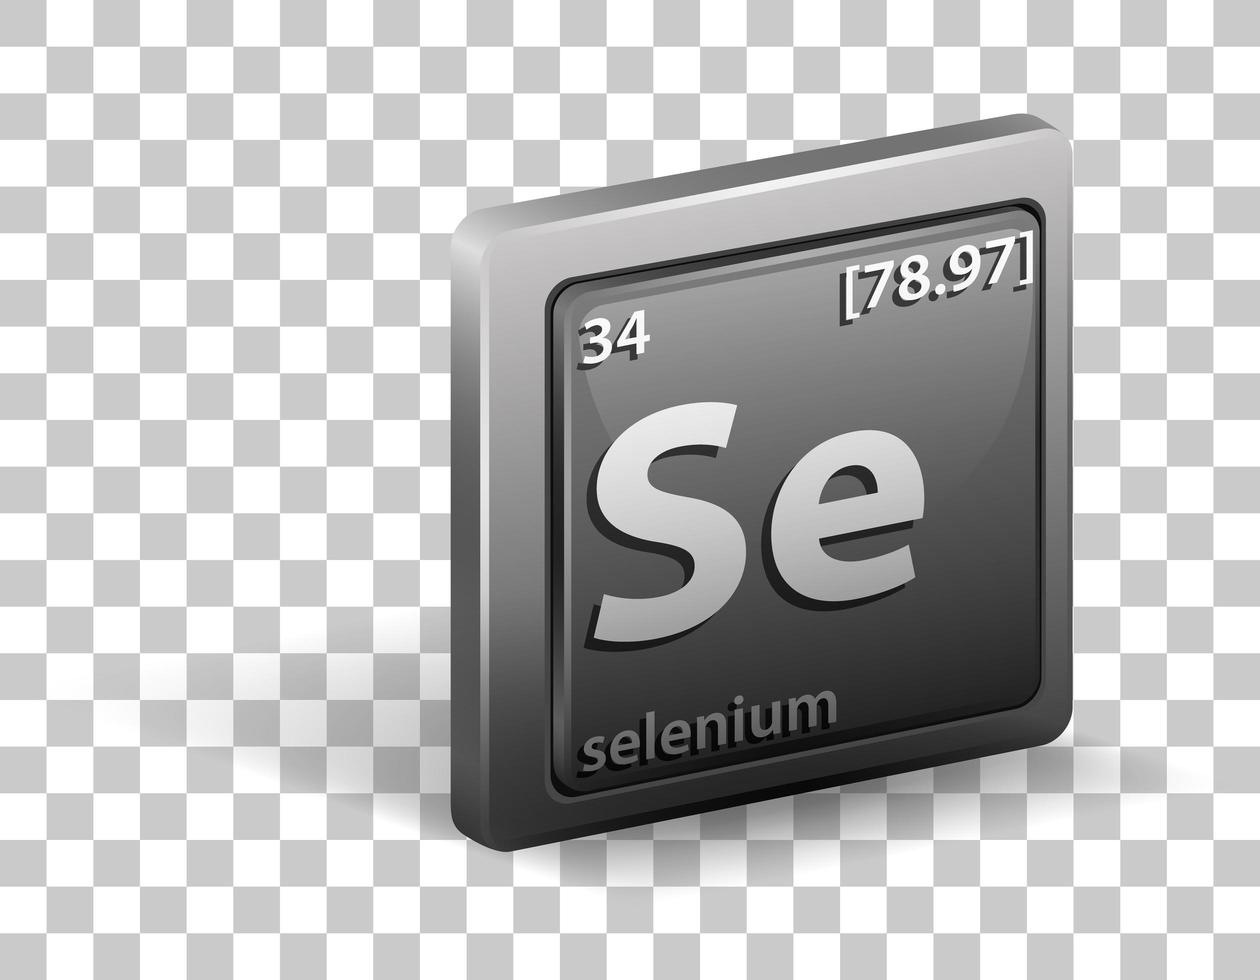 elemento químico selênio. símbolo químico com número atômico e massa atômica. vetor